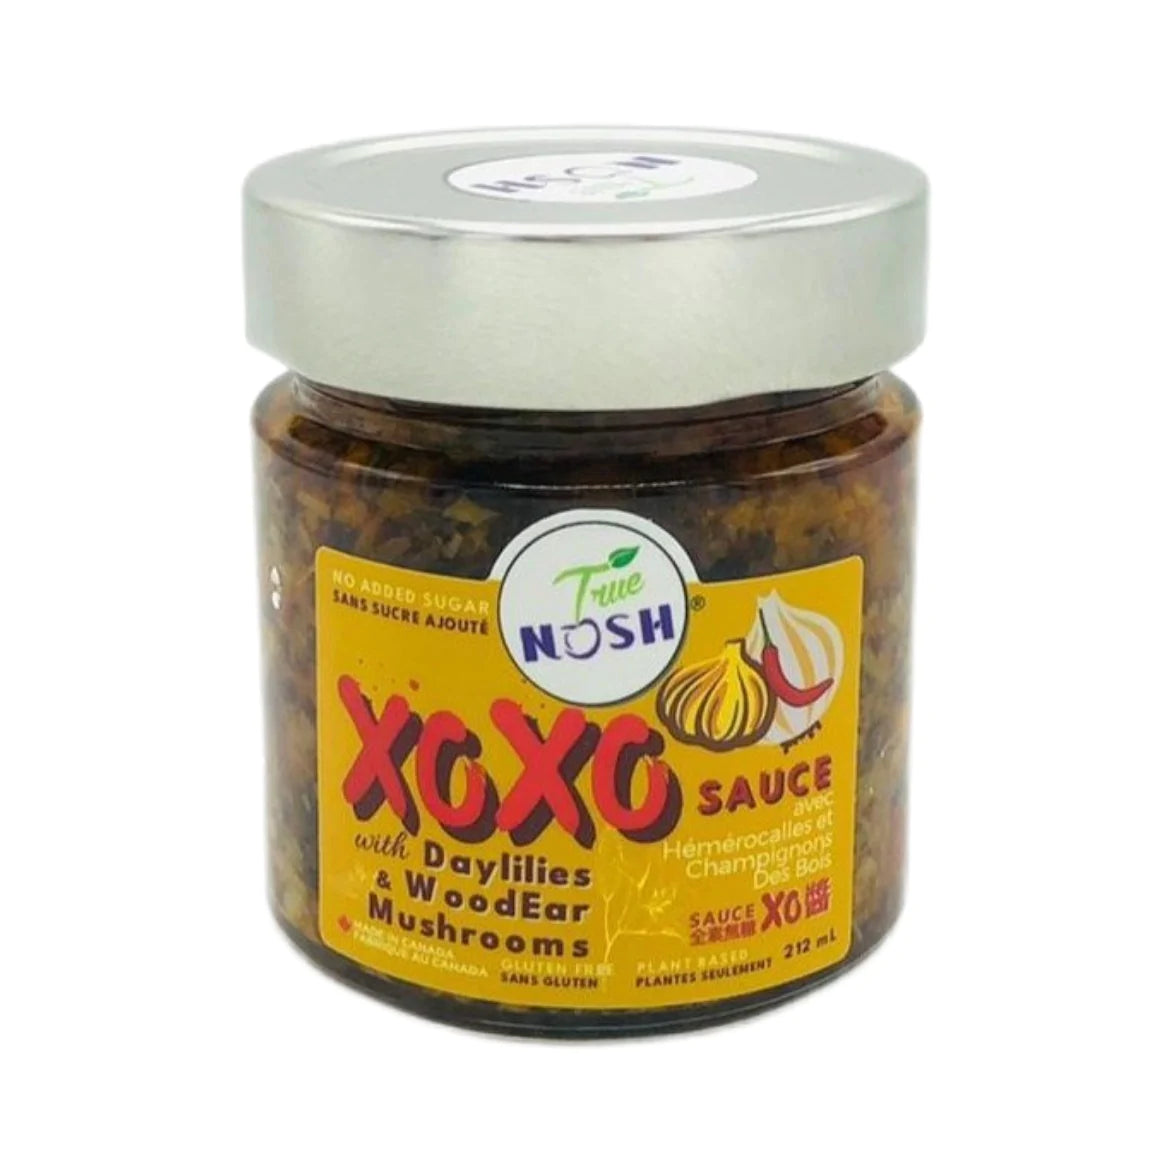 True Nosh XOXO Sauce